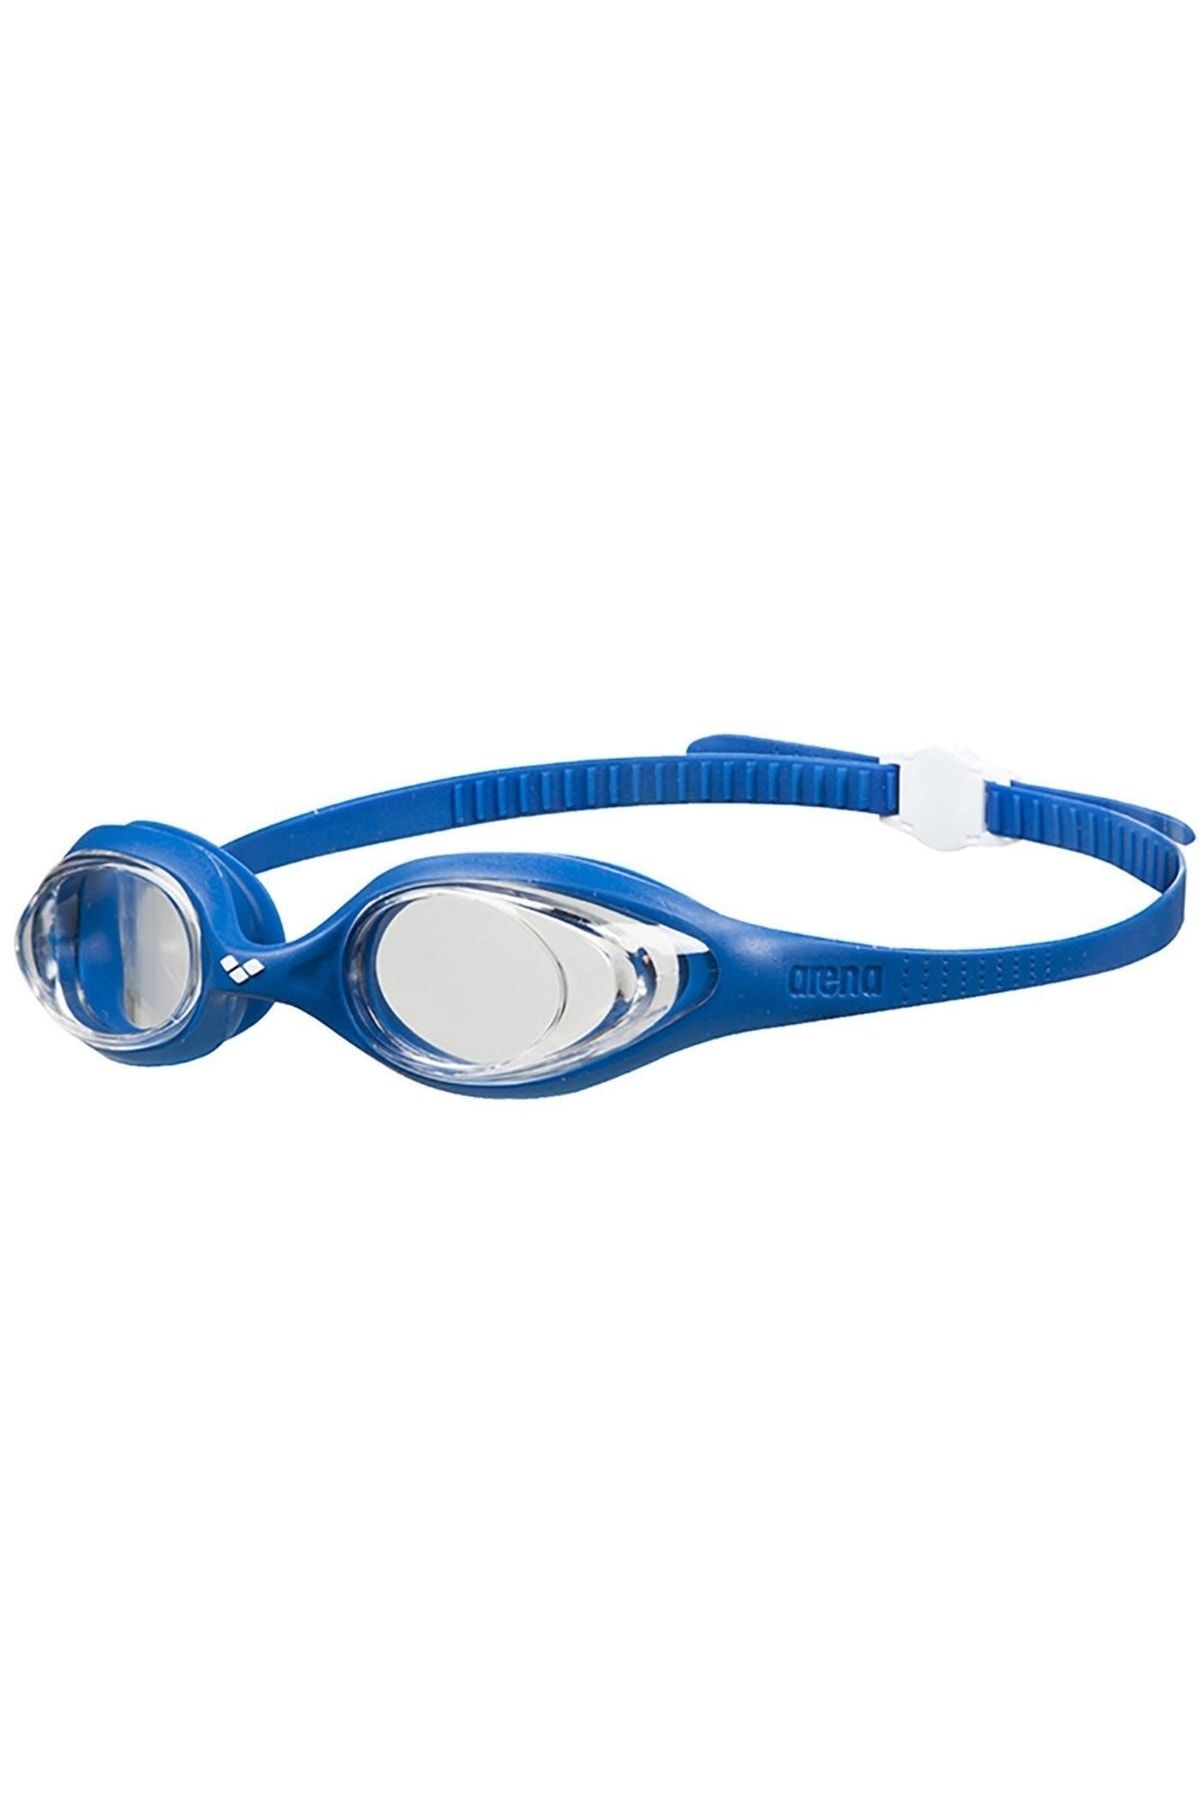 Arena Spıder Mavi Unisex Yüzücü Gözlüğü